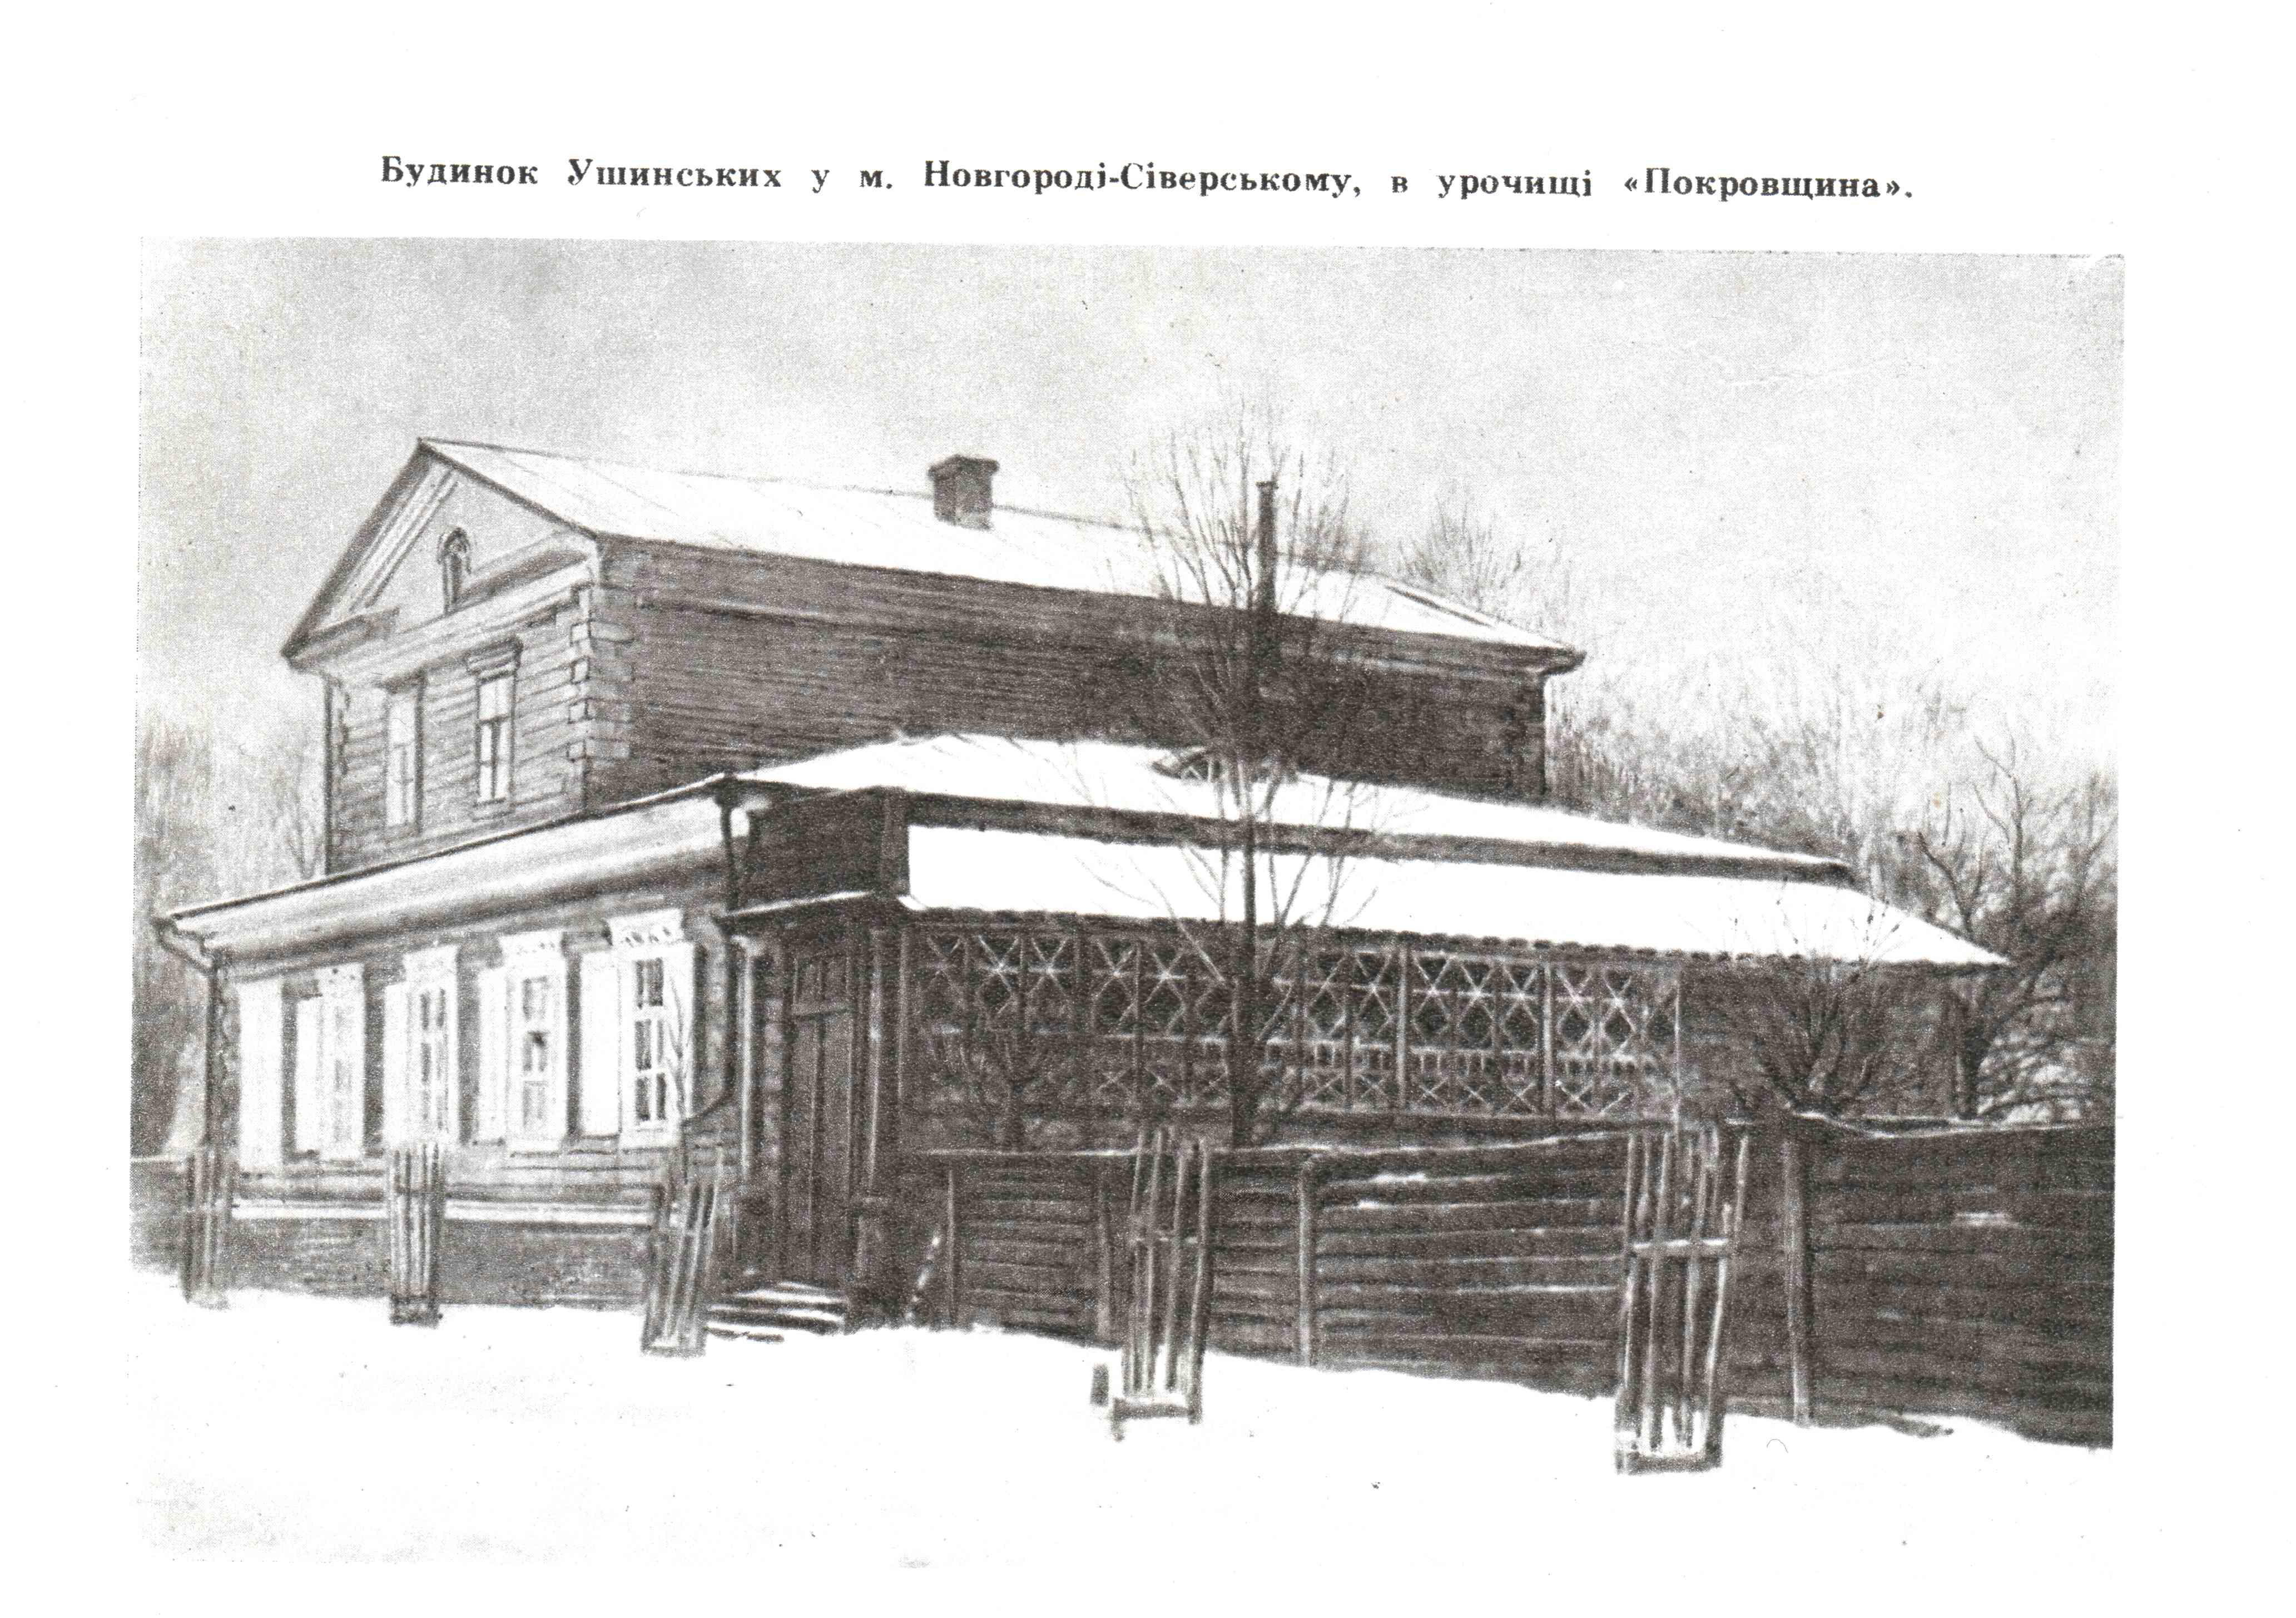 Будинок Ушинських у Новгороді-Сіверському. Фото надані автором